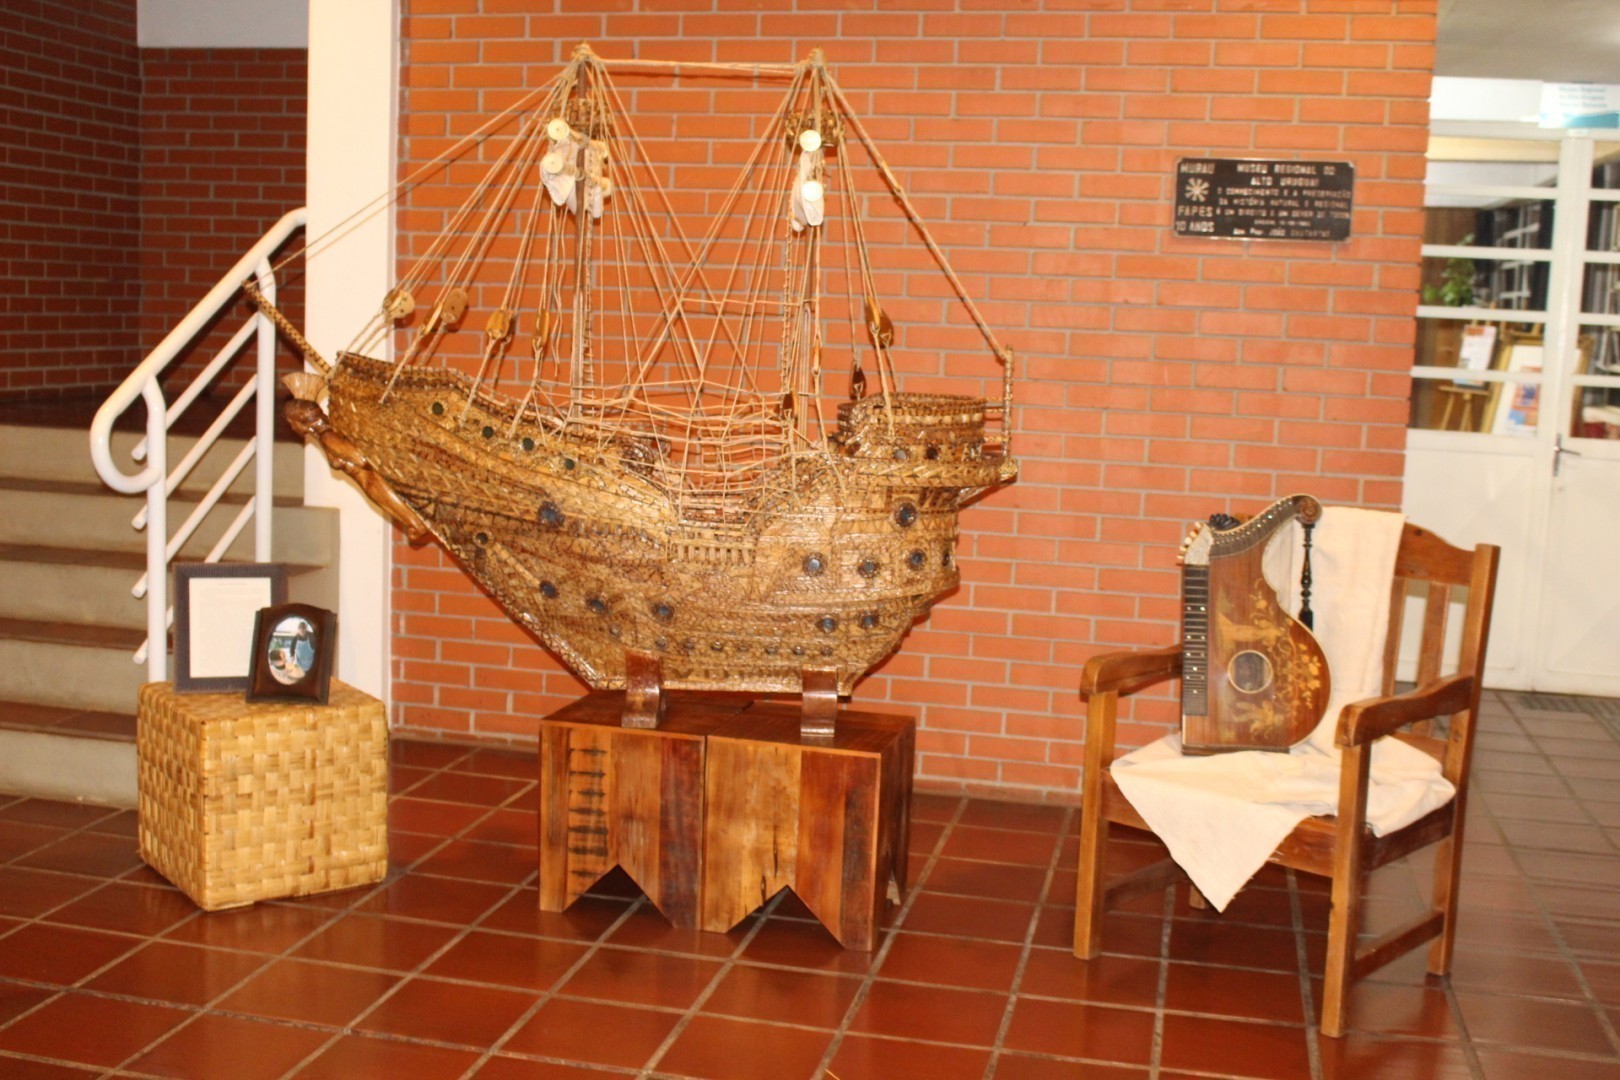 Barco Athena, de Alberto Tamburrino, feito de palito de fósforo, também foi atração do evento 